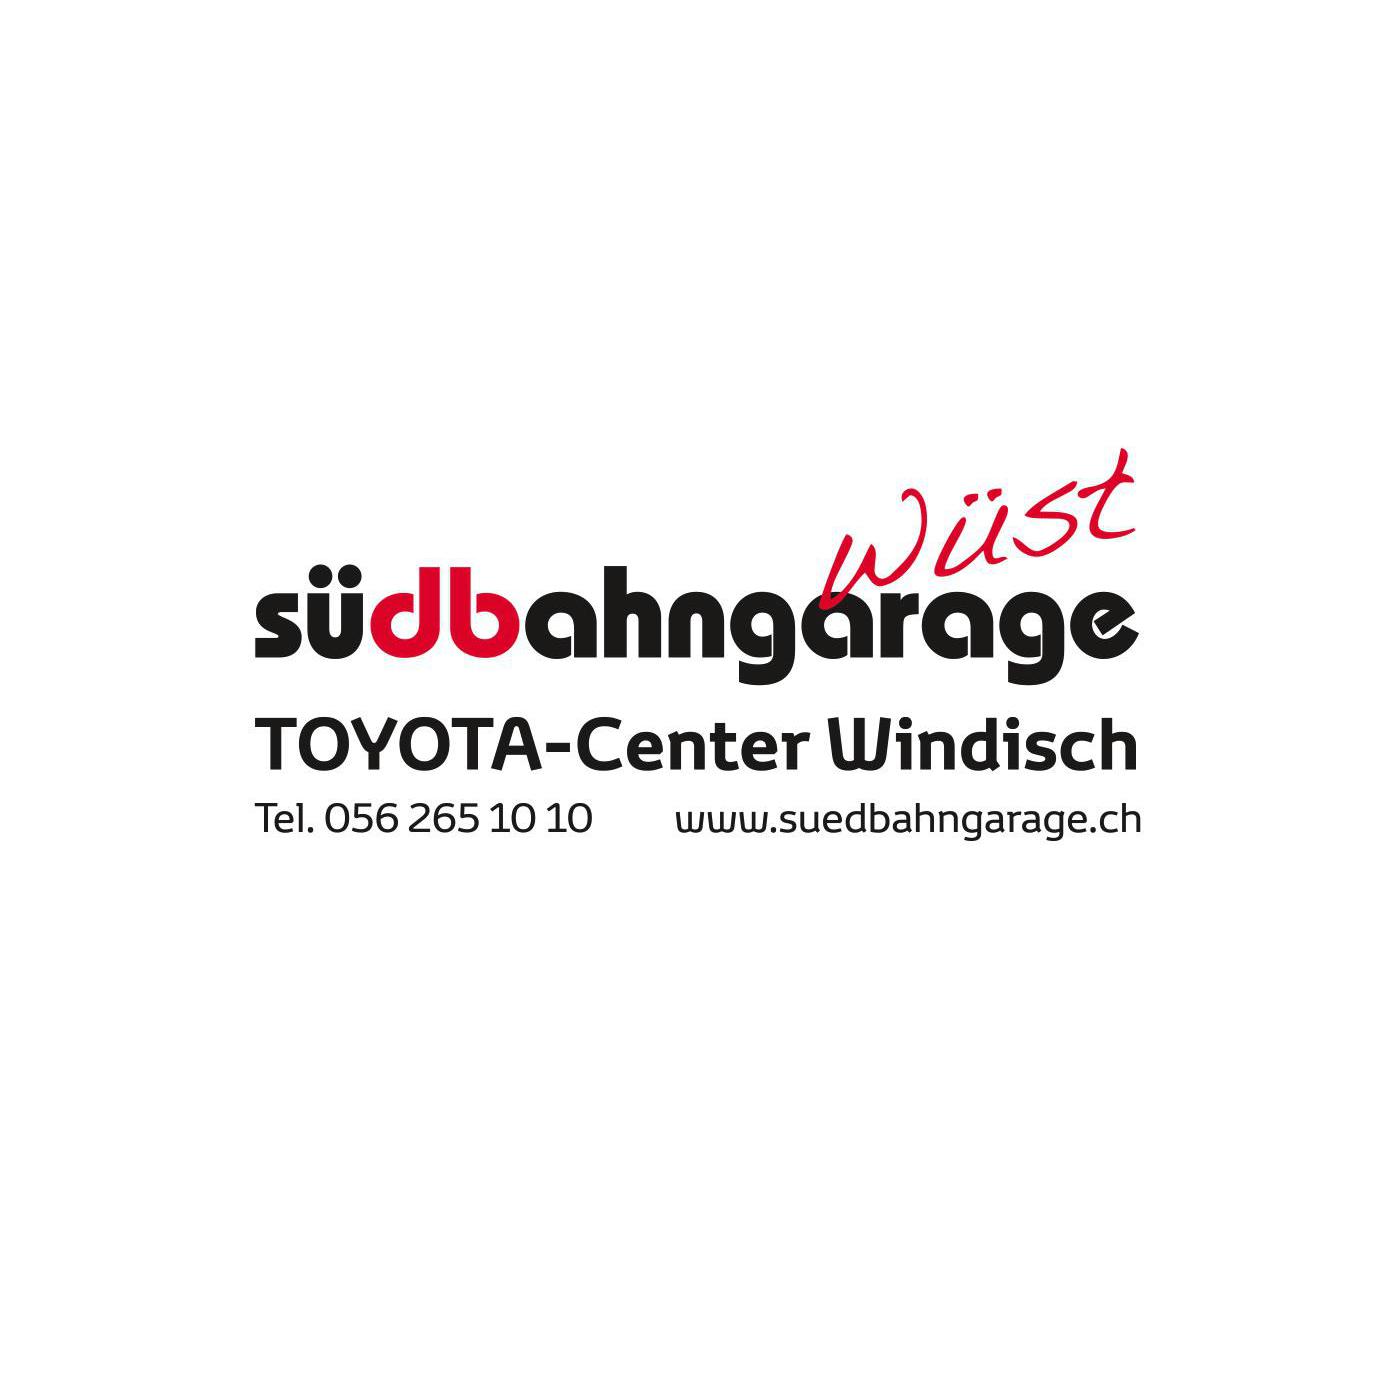 Südbahngarage Wüst AG Logo